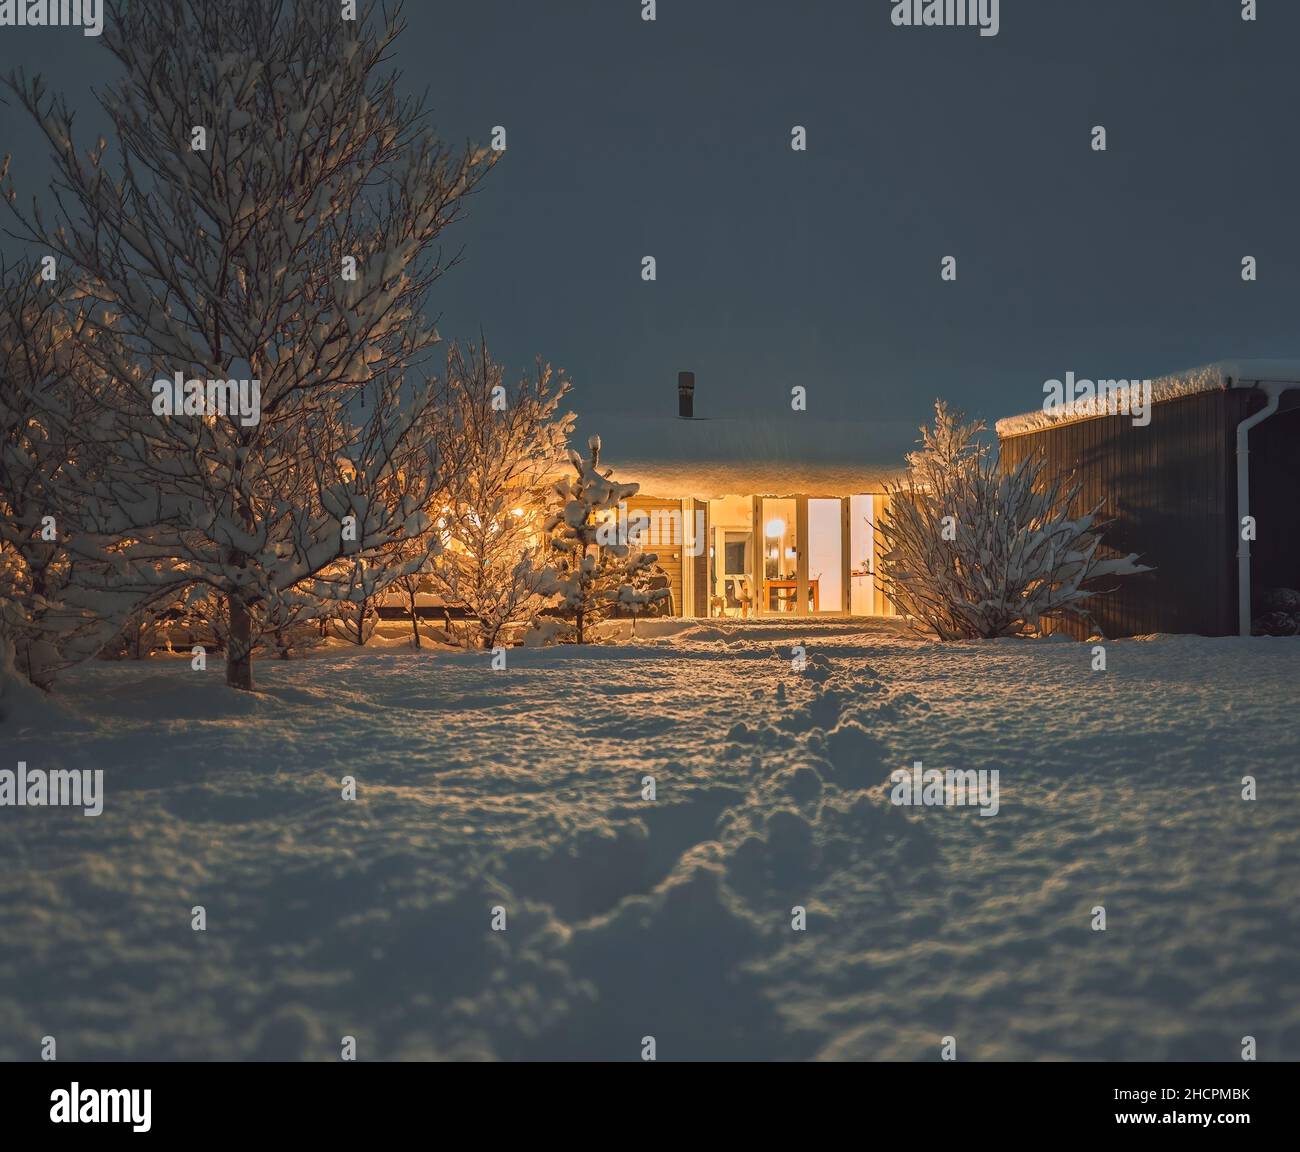 Fantastisches Winterlandschaftspanorama mit Holzhaus in verschneiten Bergen. Schneebedeckte Hütte. Weihnachtsferien und Winterurlaub Konzept Stockfoto